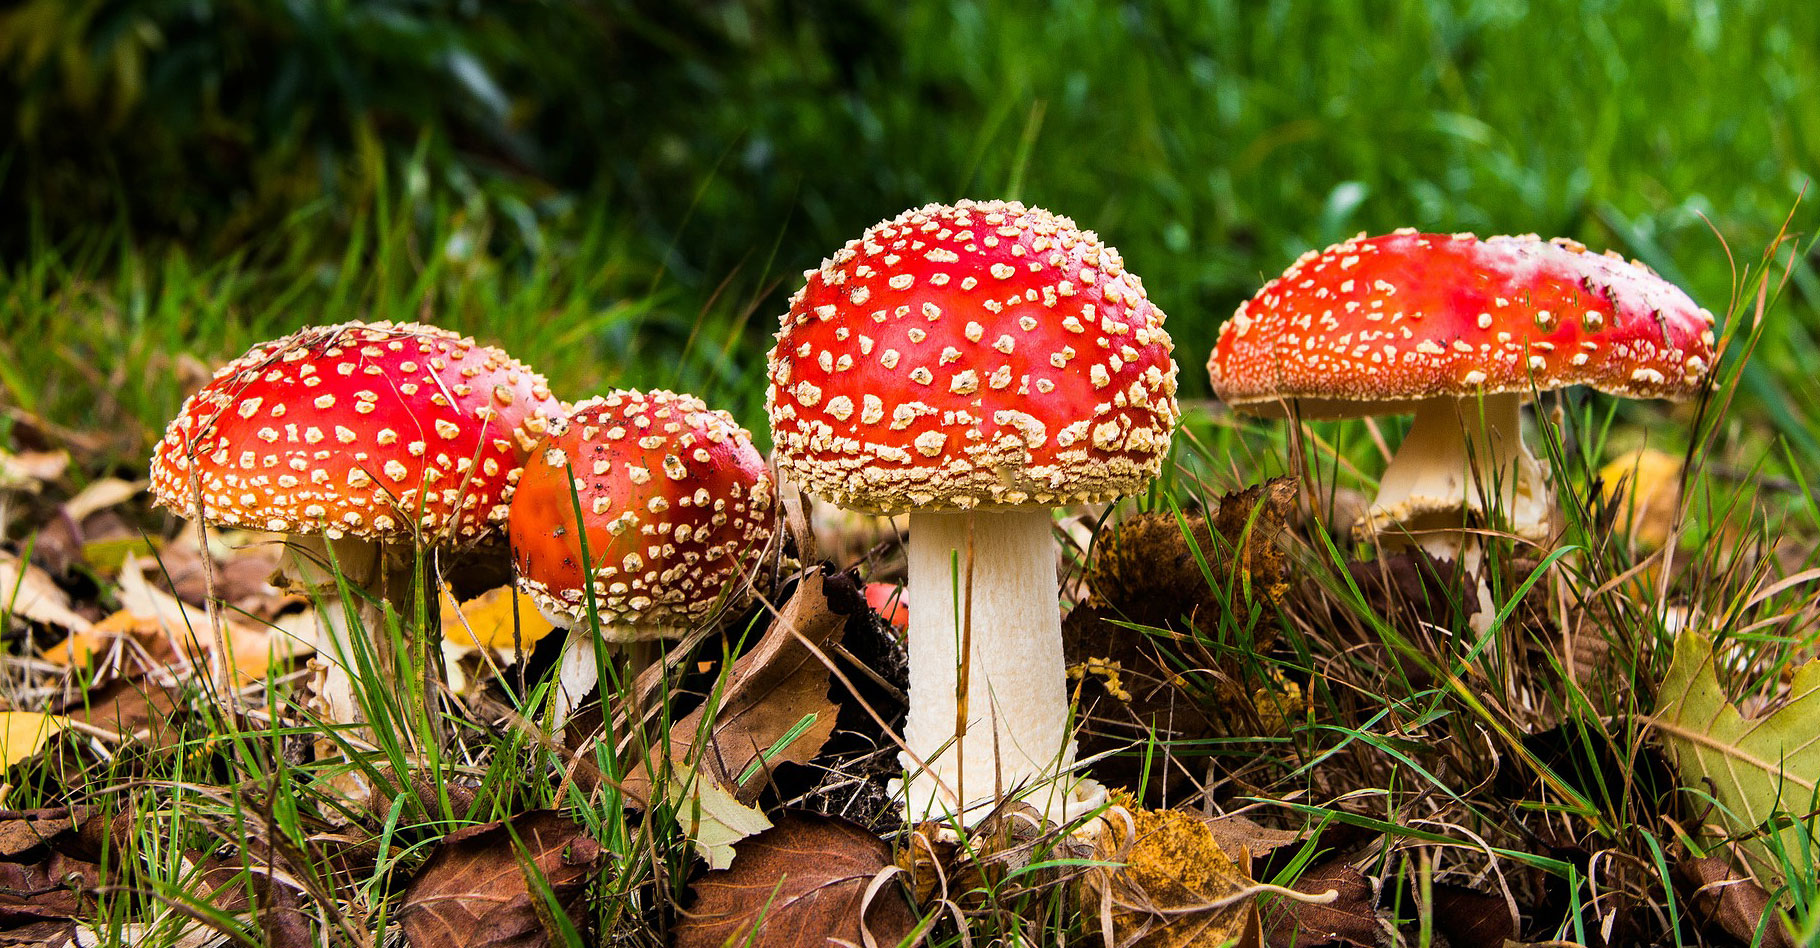 La cueillette des champignons est un passe-temps captivant. Ne ramassez jamais une espèce que vous ne pouvez identifier avec certitude. © Allstars, Shutterstock